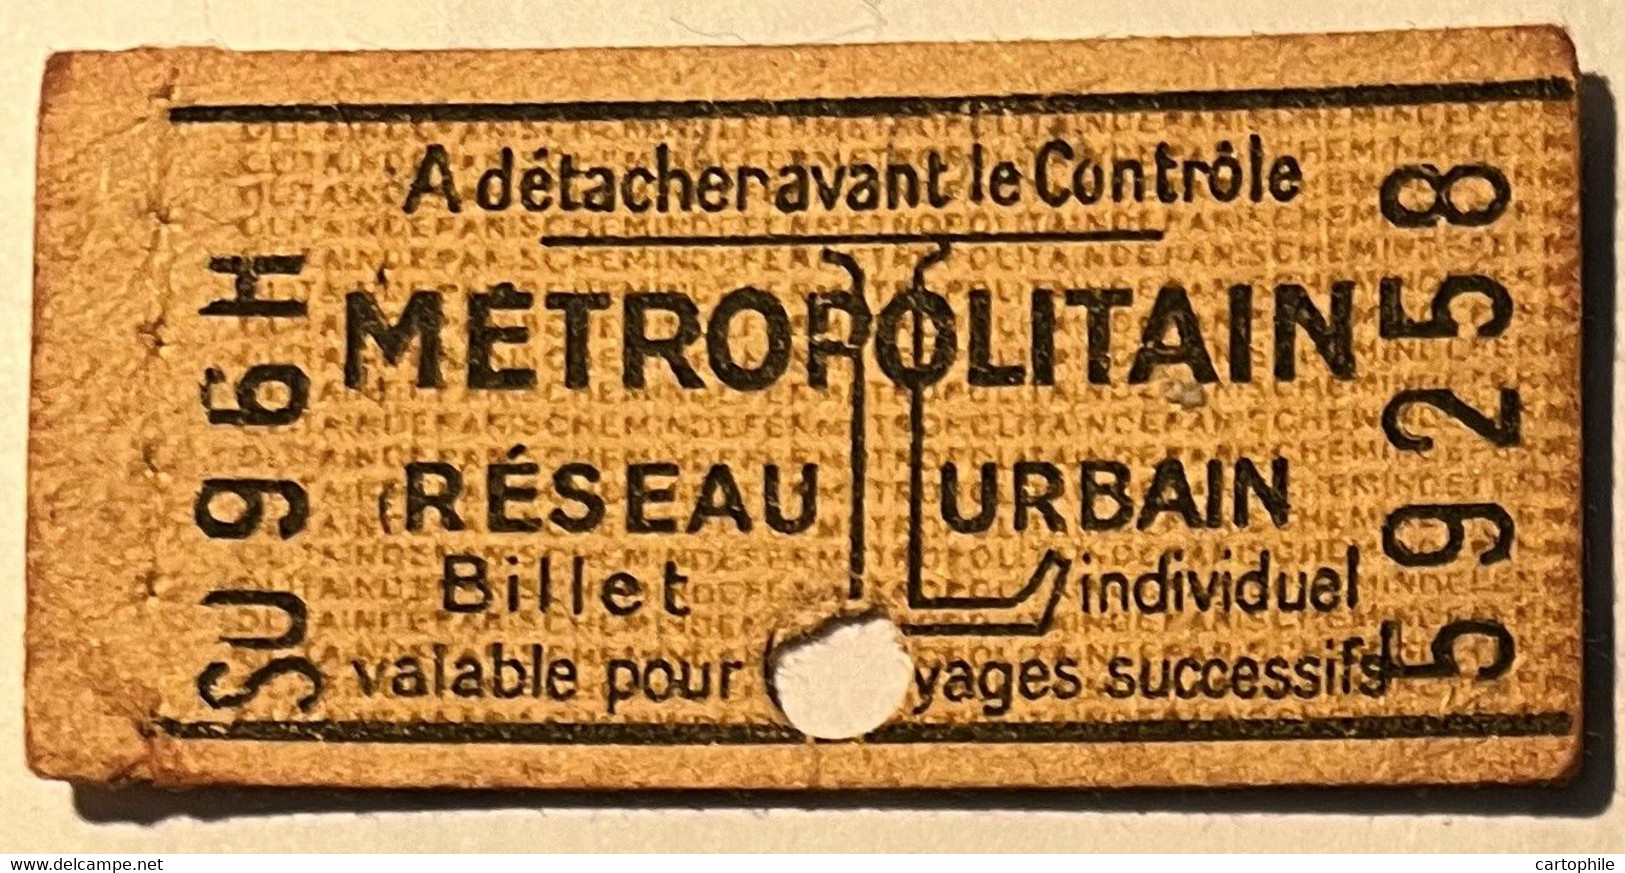 Metropolitain De Paris - Ticket De 2e Classe AR - Tarif L - Avec Publicité Au Dos (Lame Rasoir RB) - Usagé - Europe